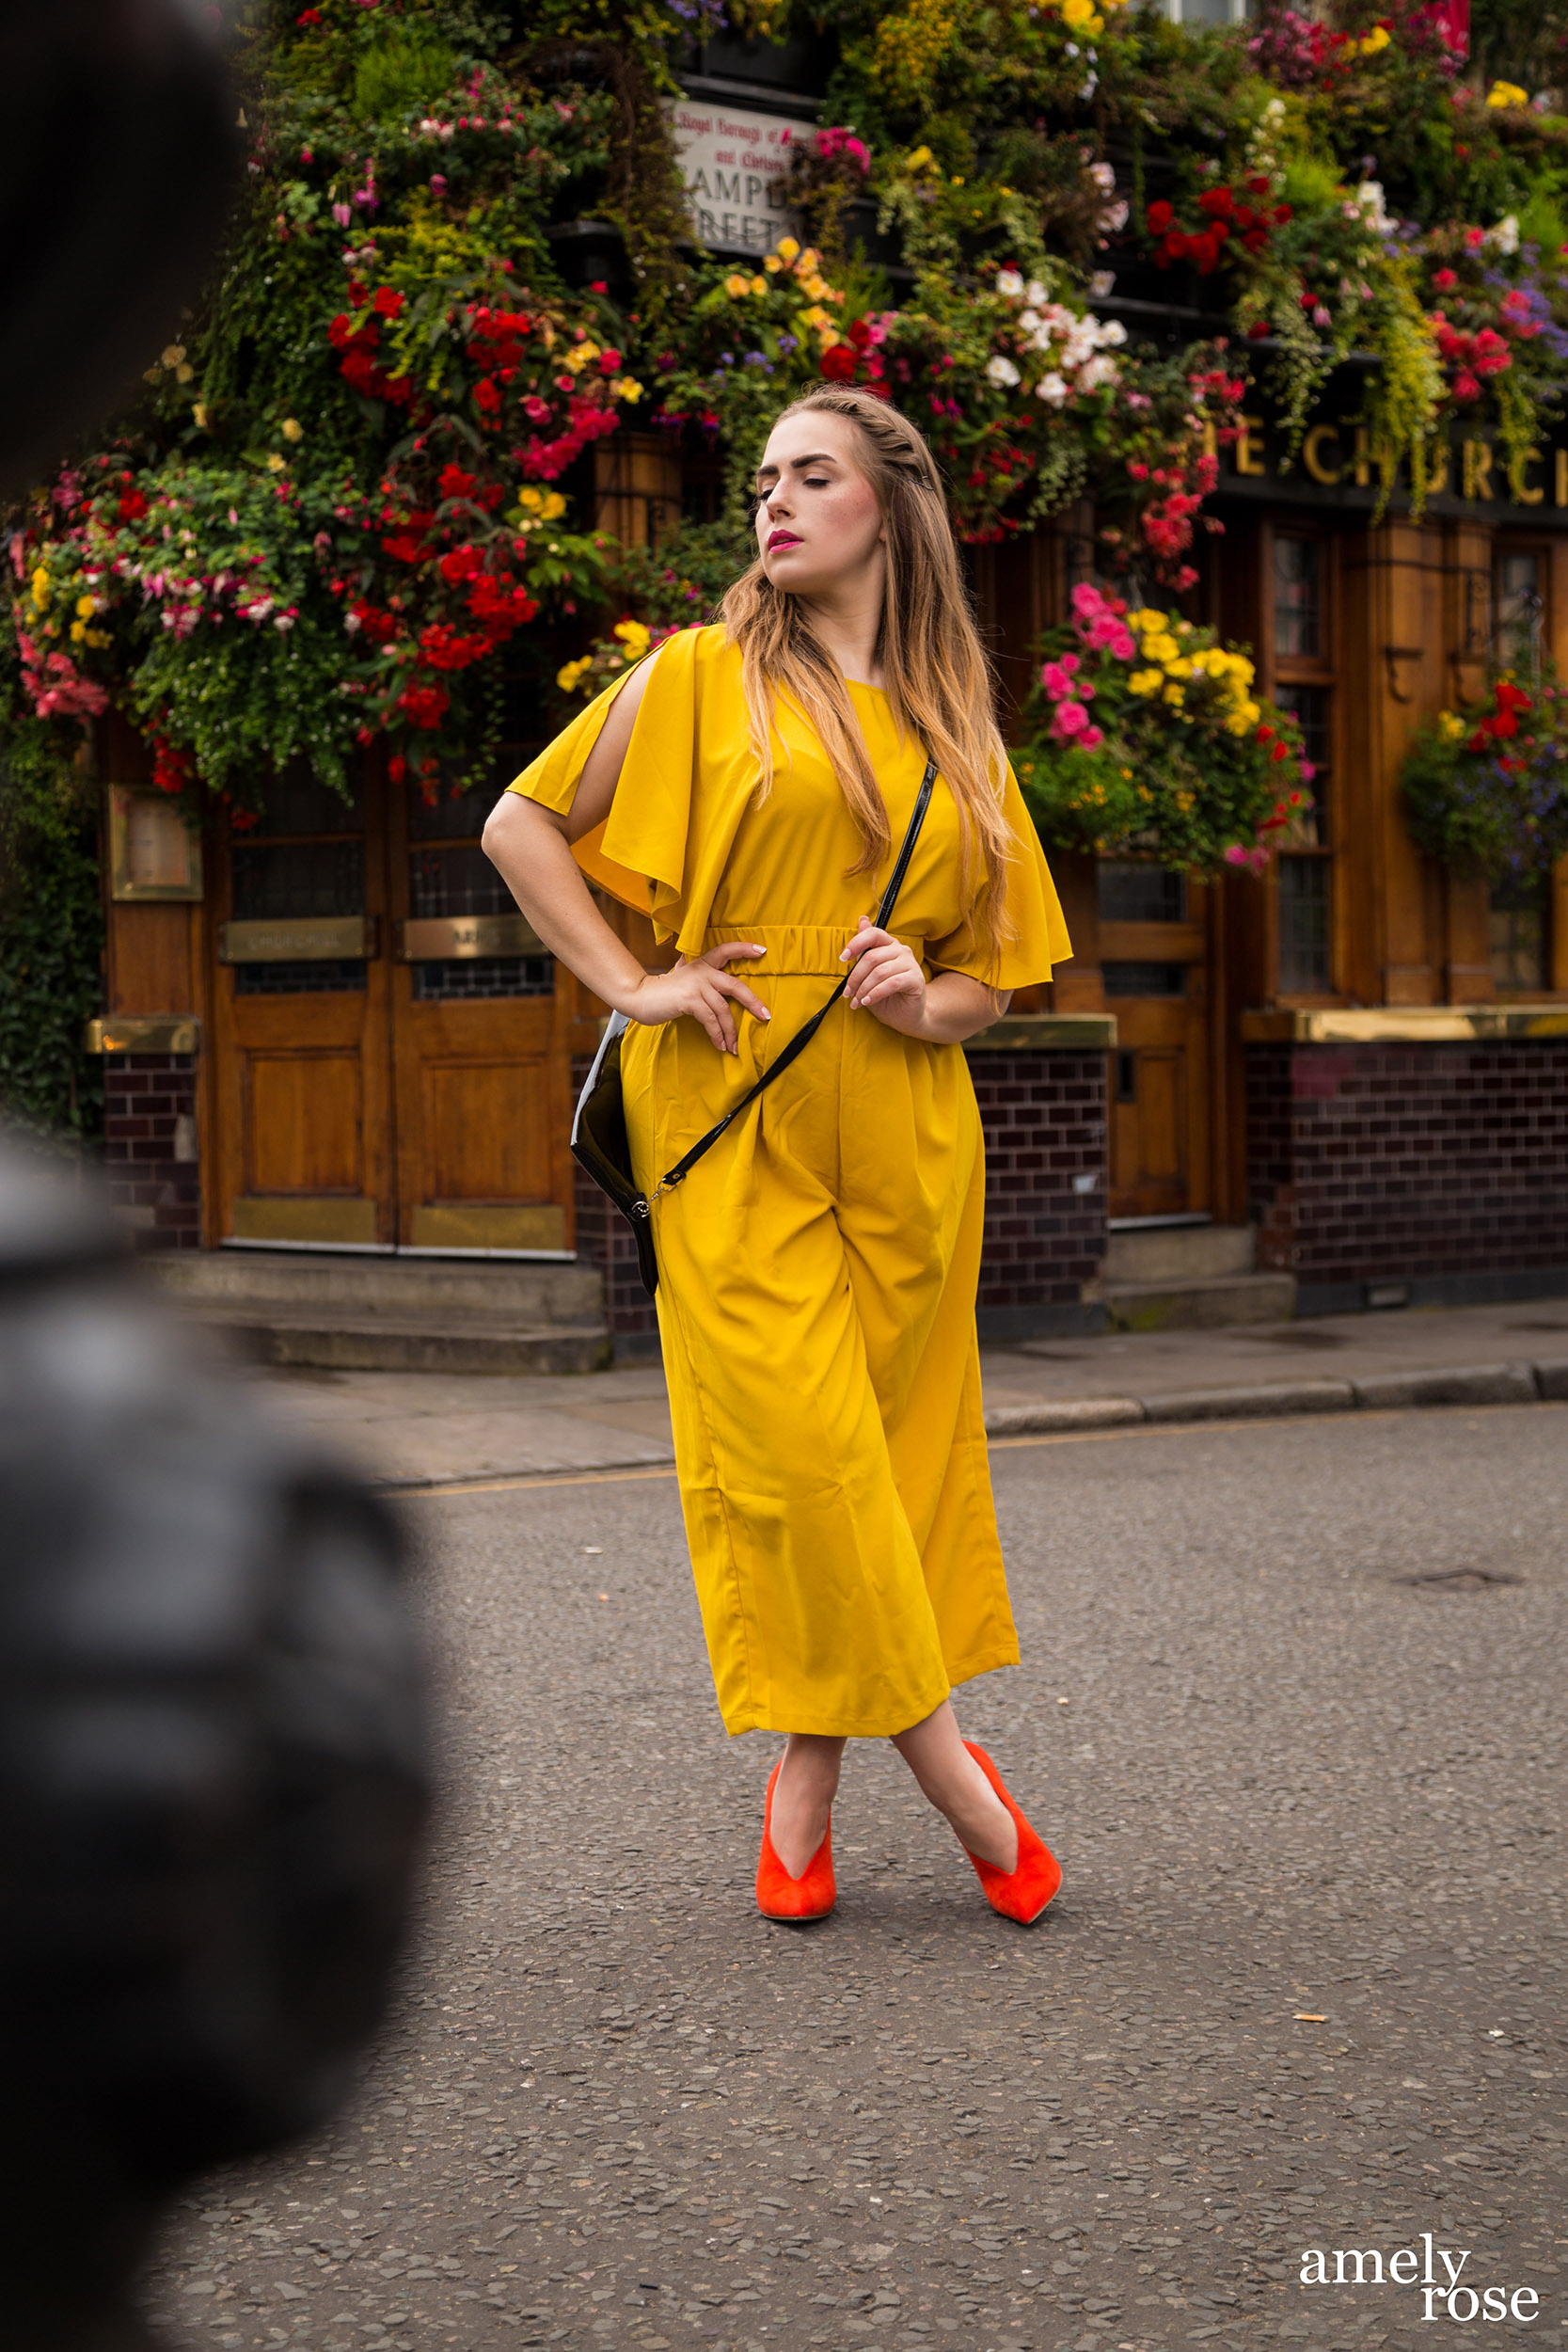 amely rose,german fashionblogger in einem gelben einteiler und einem sommerlook, zeigt ihr ootd zur lfw der londoner fashion week vor dem szeneviertel und pup churchillarms.